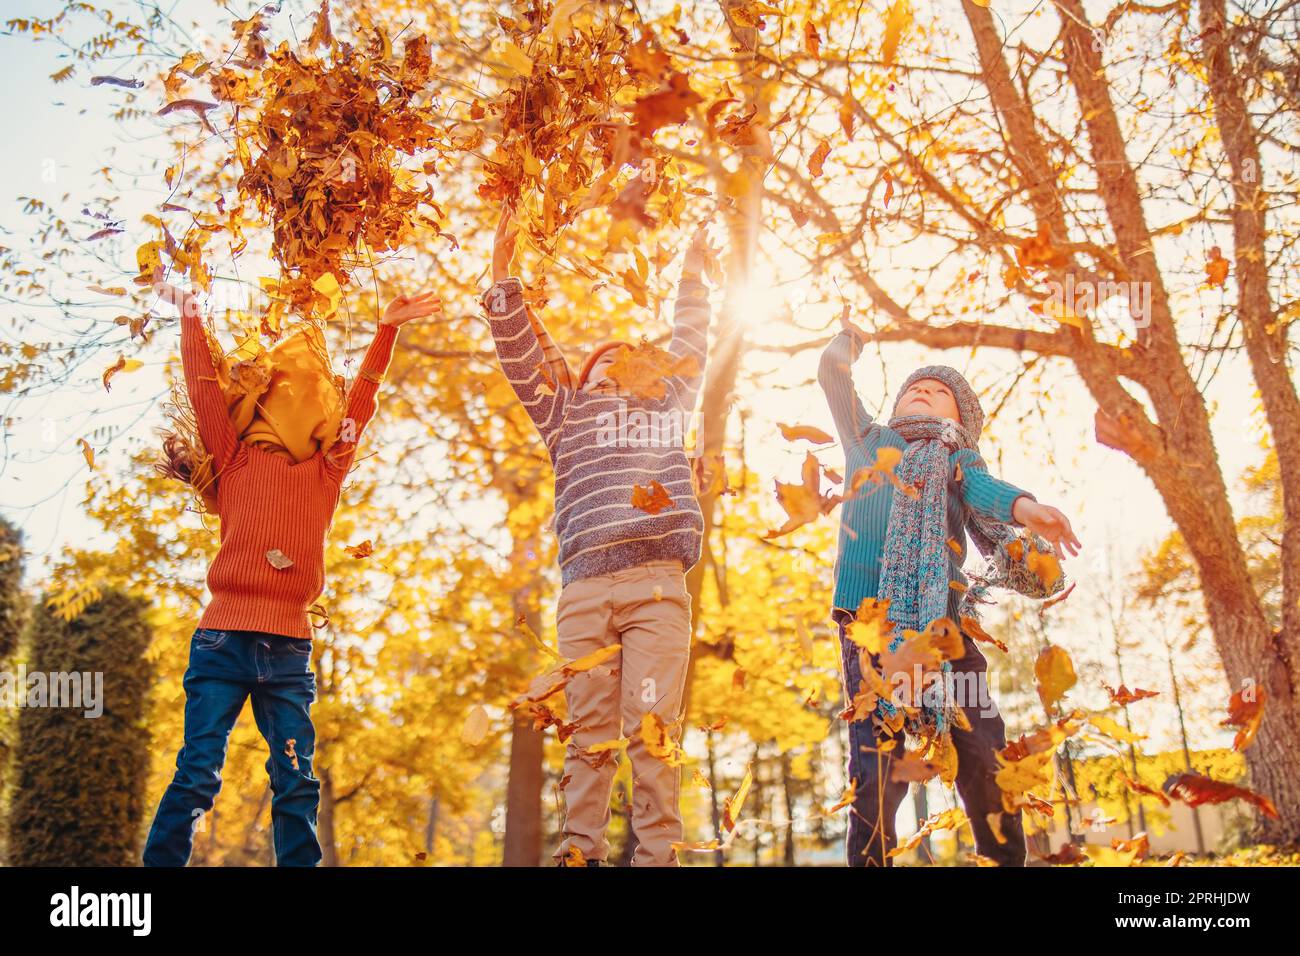 Kinder spielen am Herbsttag im farbenfrohen Naturpark zusammen Stockfoto